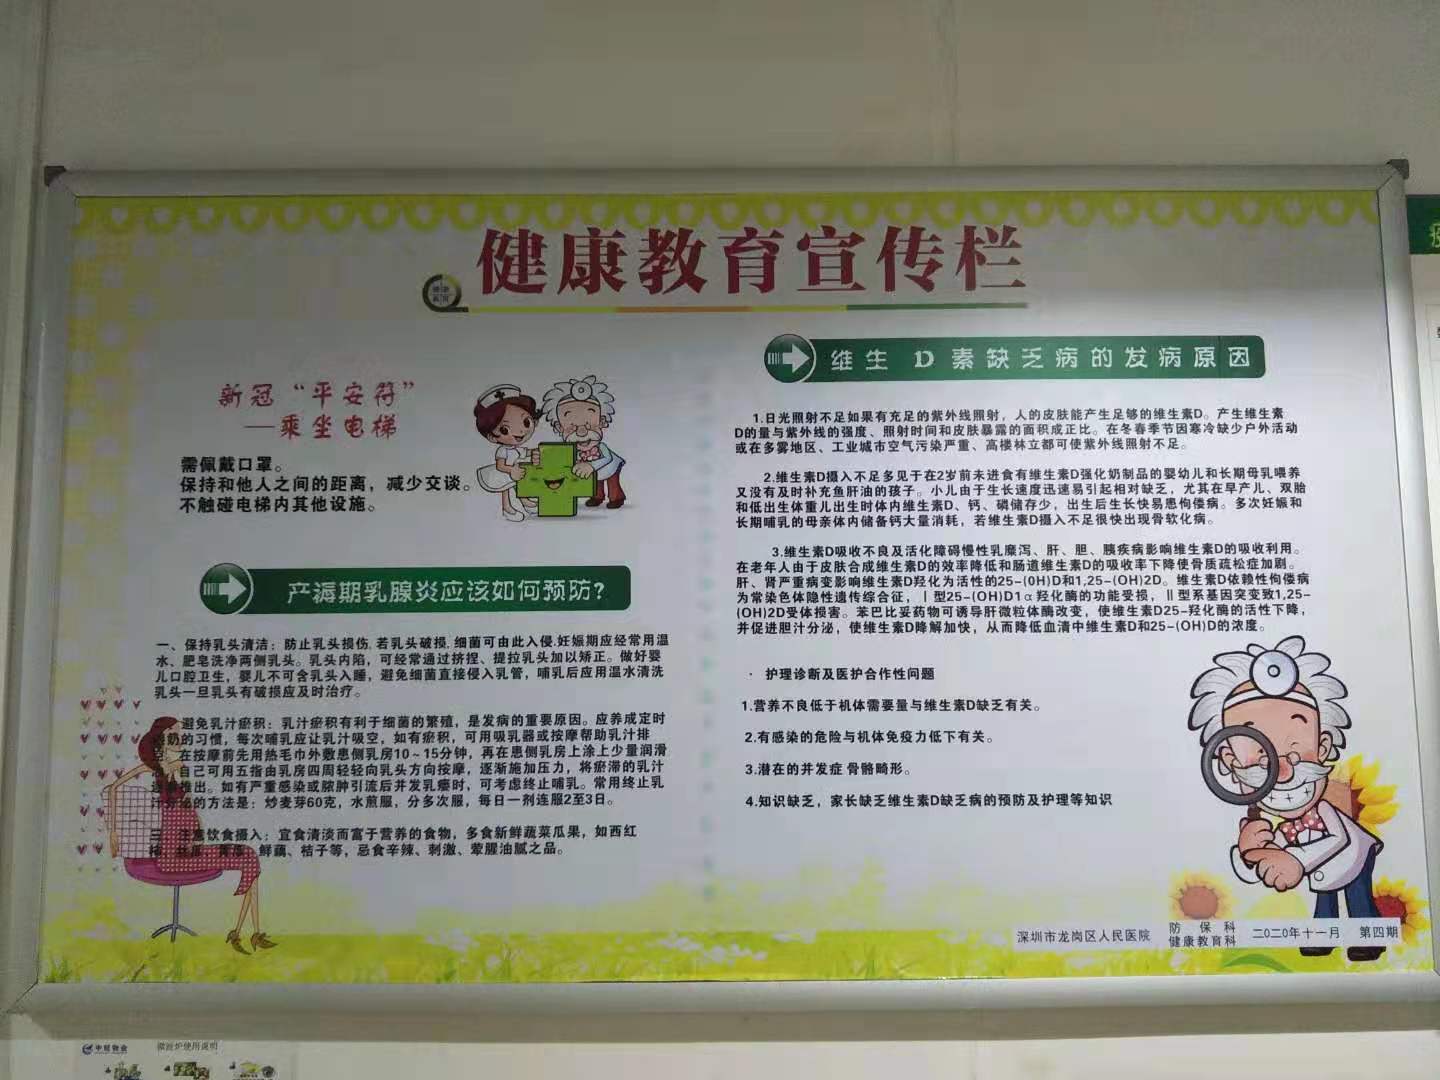 熱烈祝賀澤瑞中標深圳市龍崗區人民醫院標識標牌項目